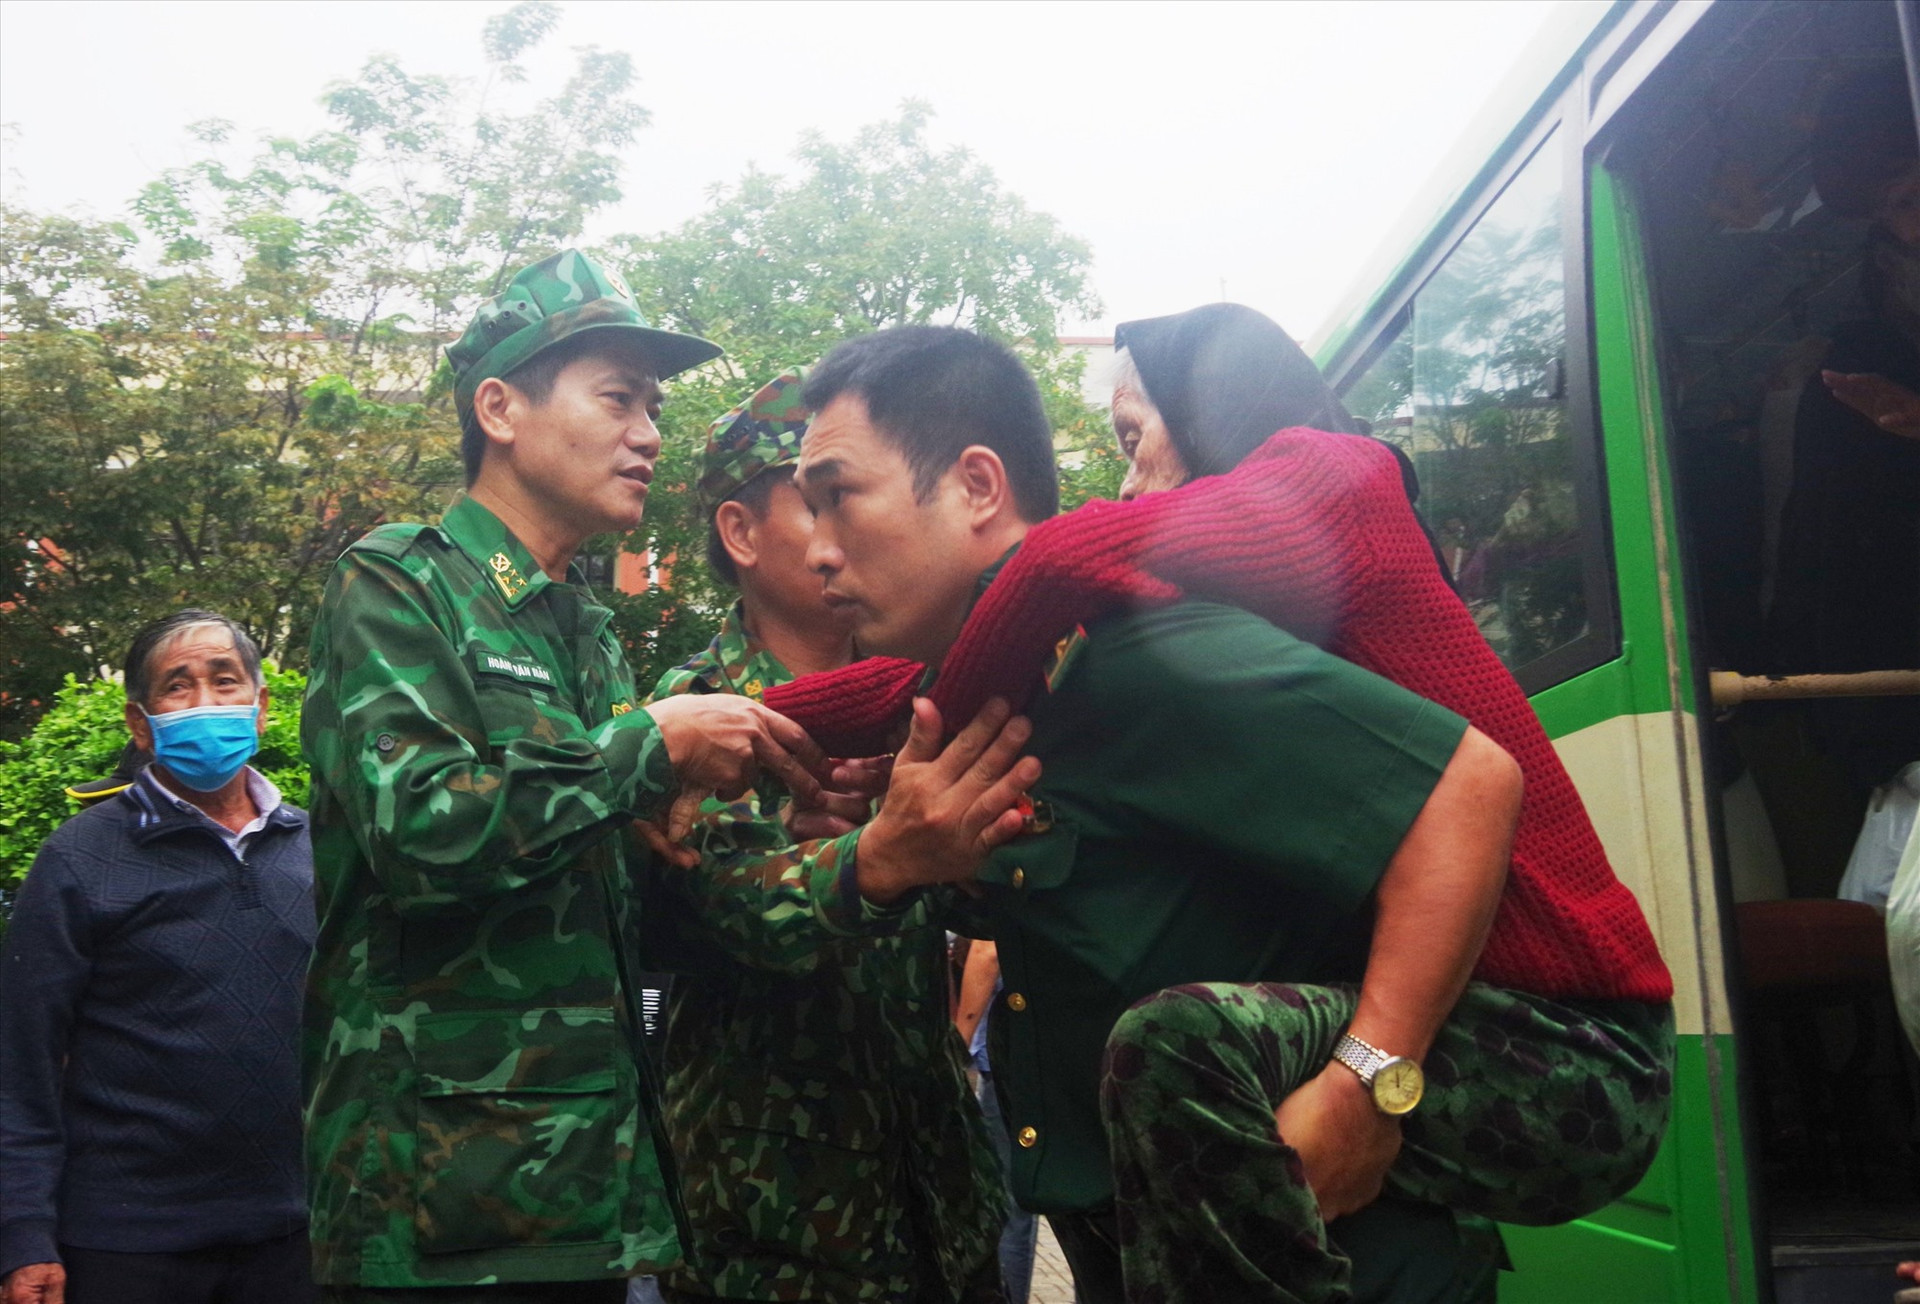 Đại tá Hoàng Văn Mẫn – Chính ủy BĐBP tỉnh Quảng Nam (bên trái) có mặt từ sáng sớm để đưa bà con về cơ quan Biên phòng tỉnh tránh trú bão